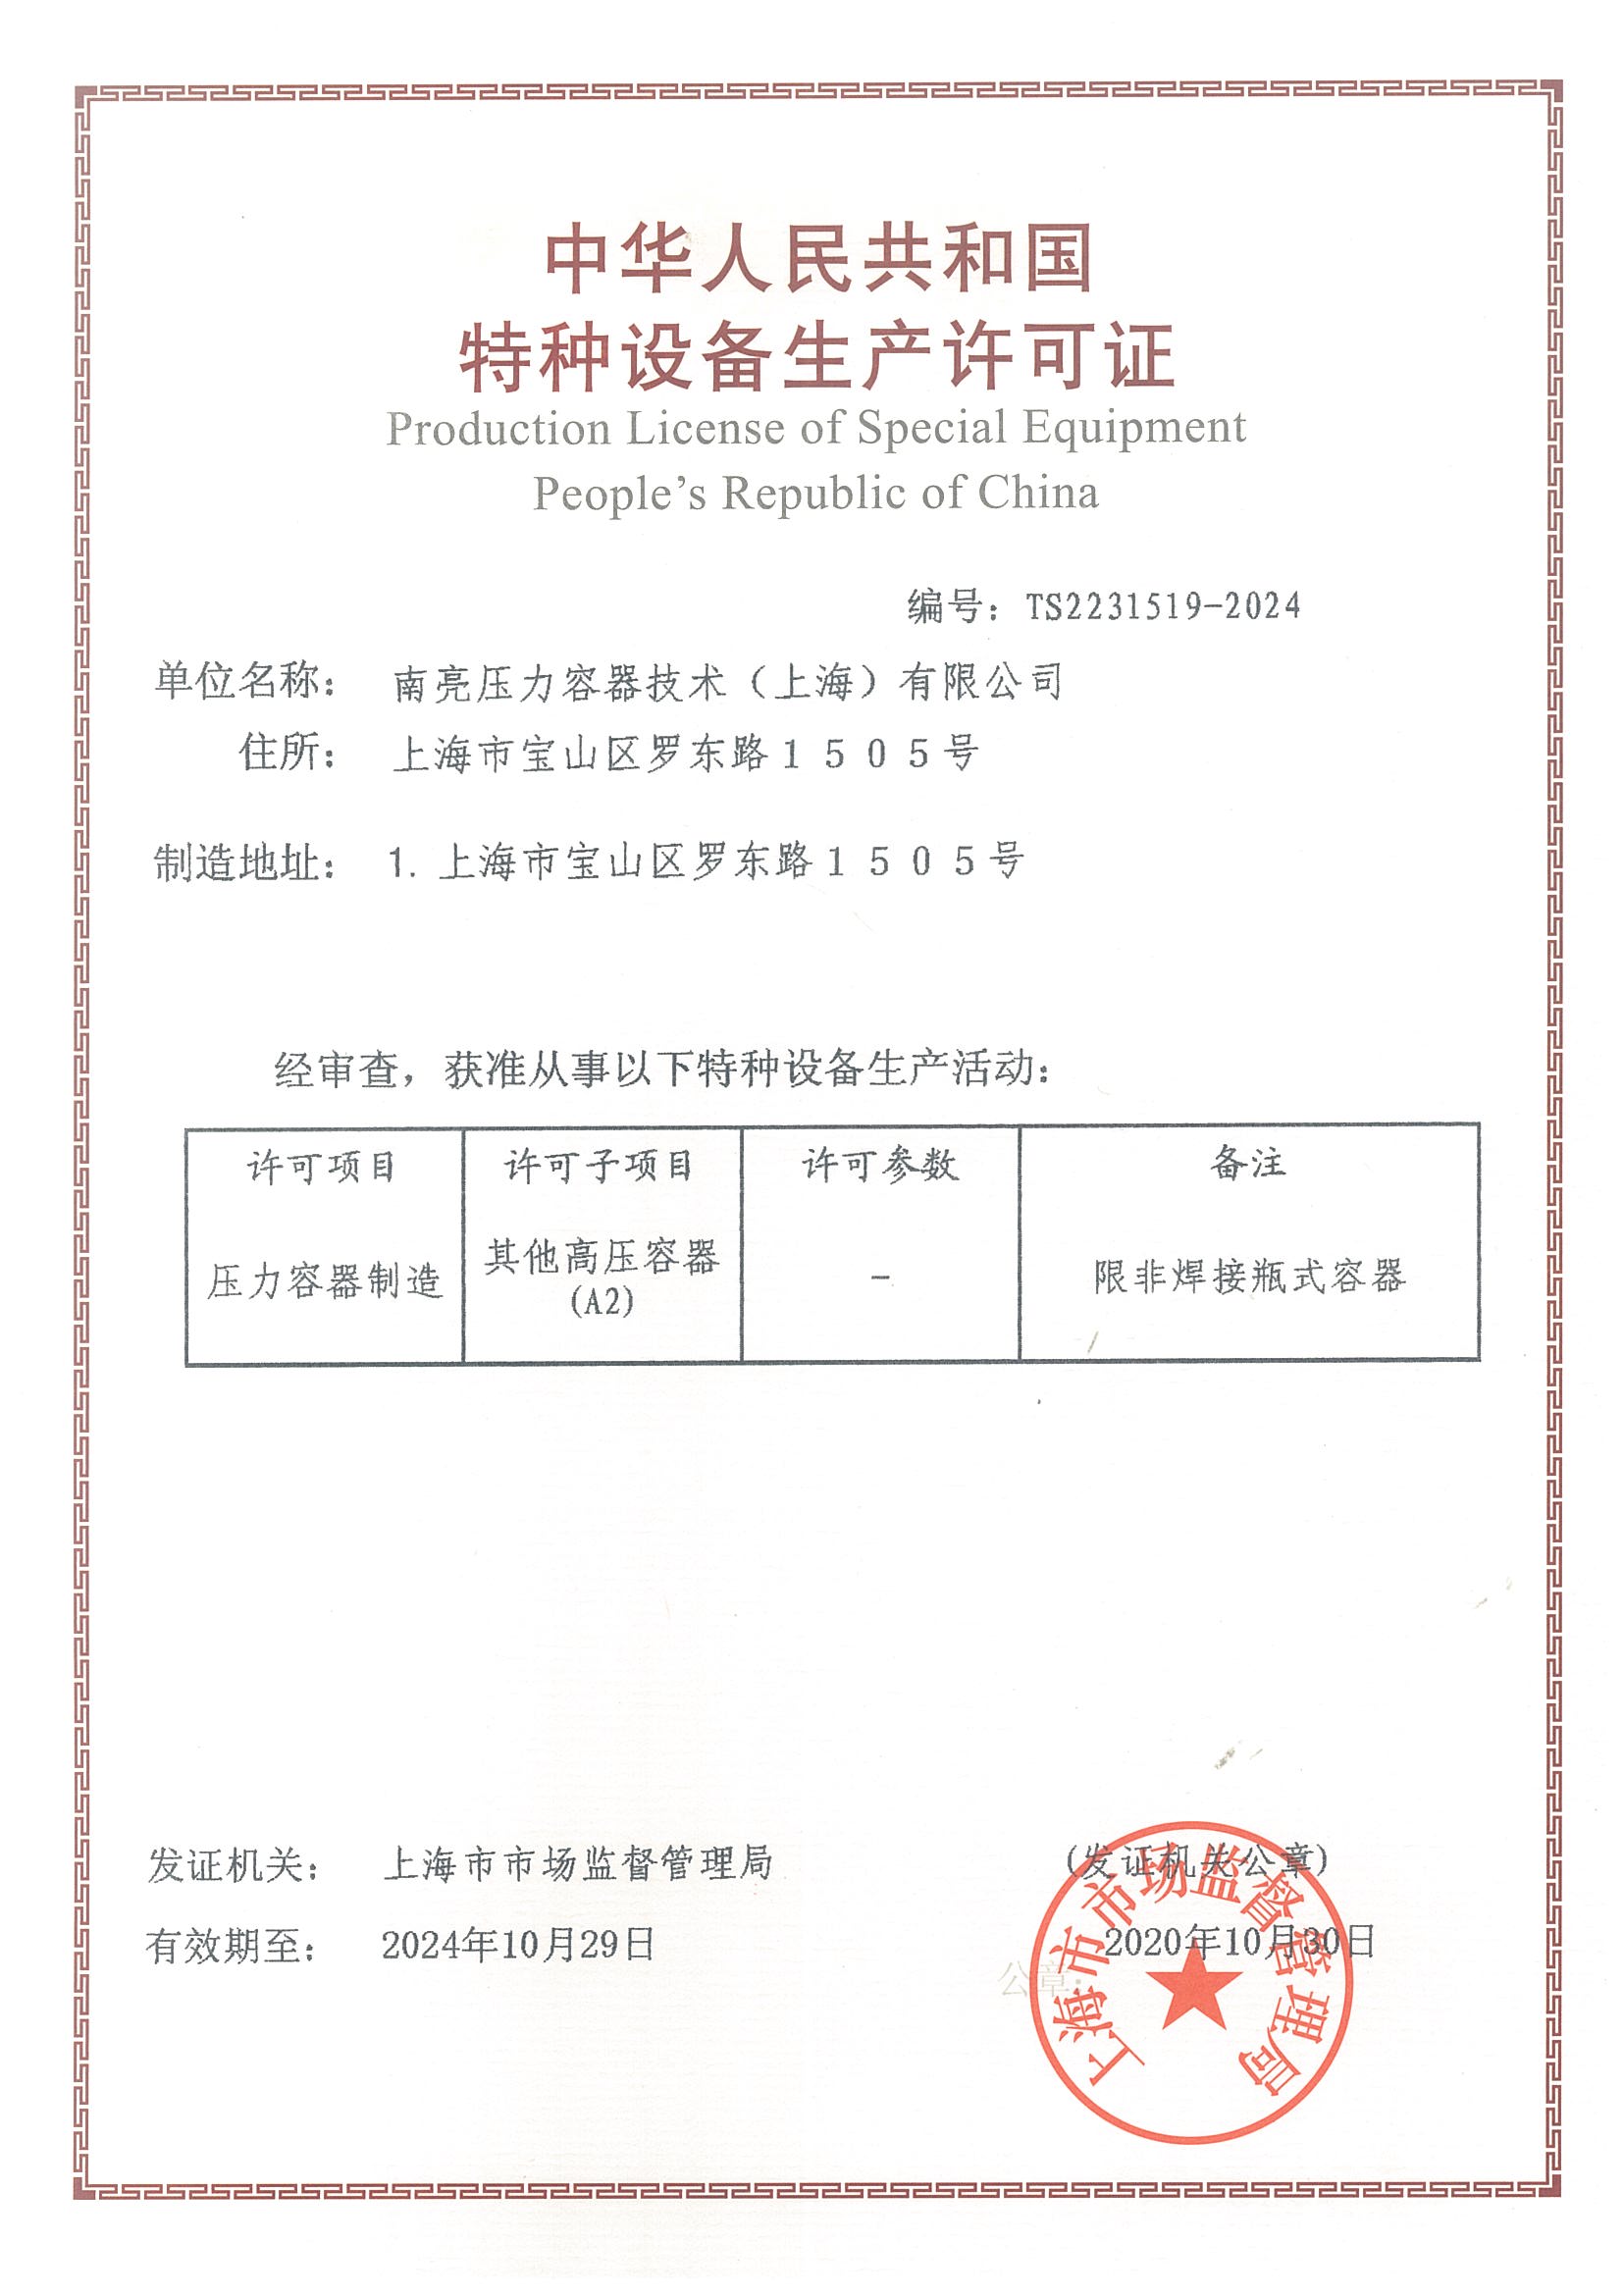 Manufacturing certificate（A2）